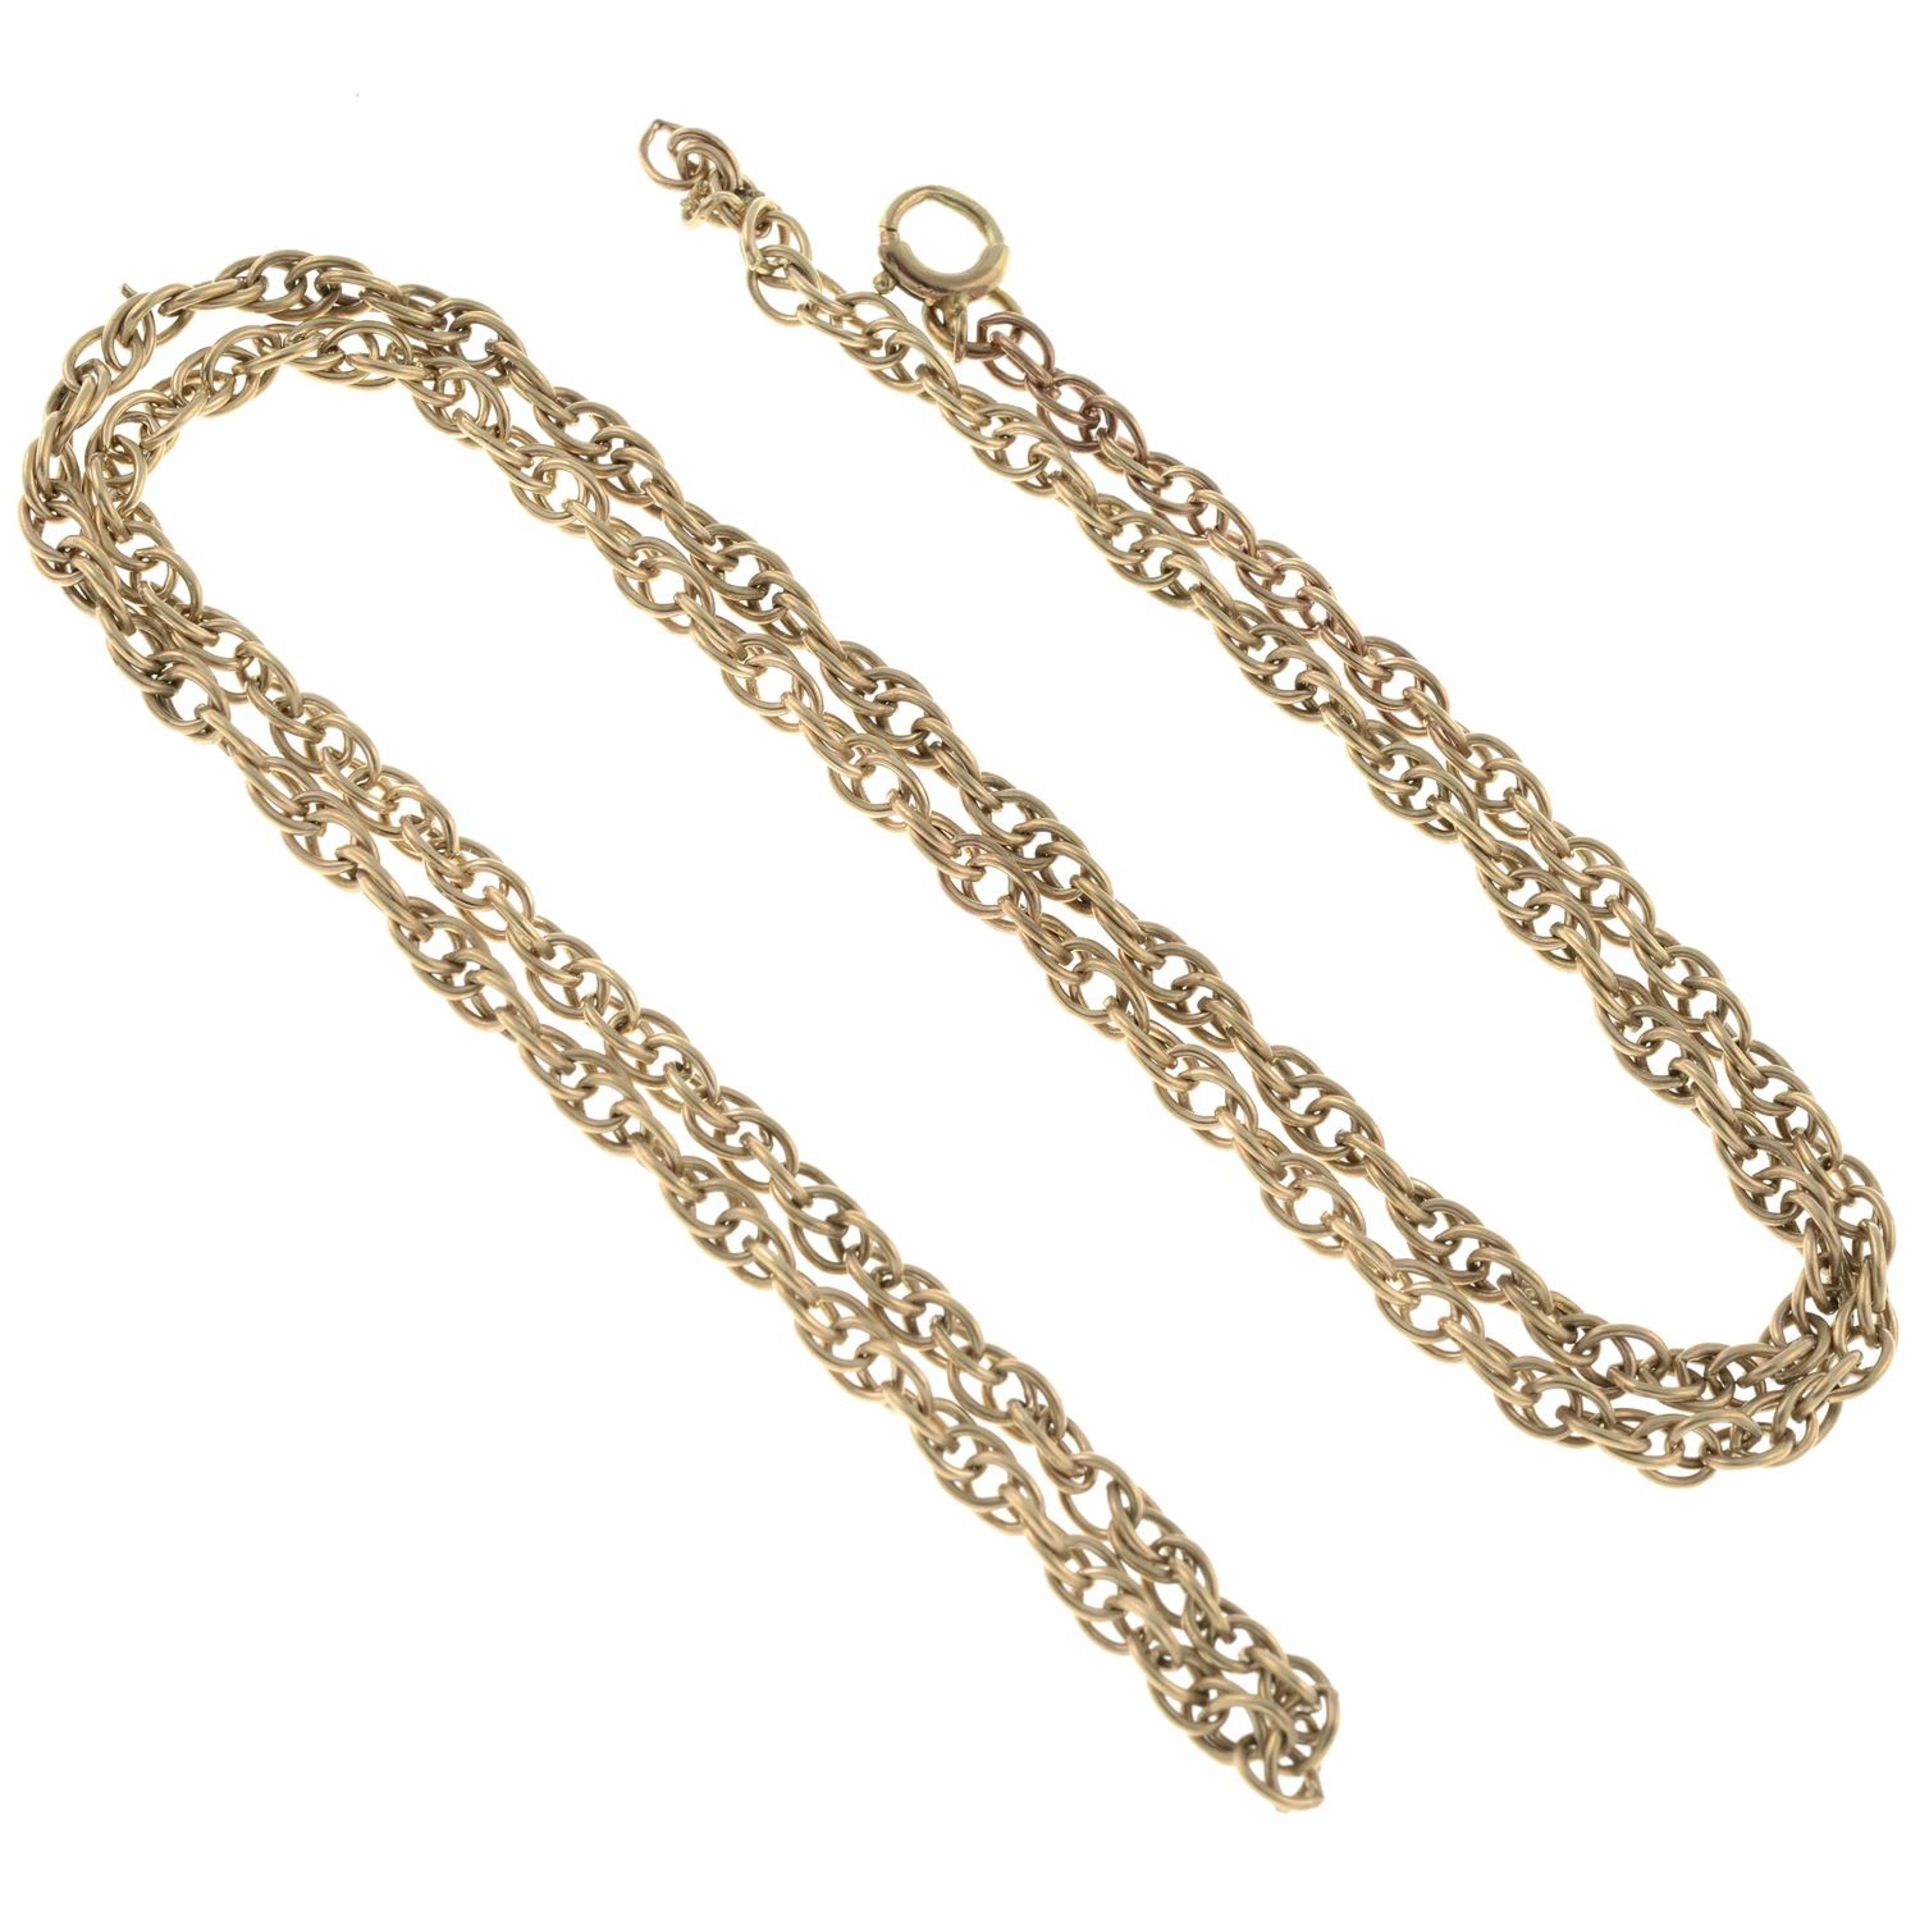 A rope-link chain. - Bild 2 aus 2